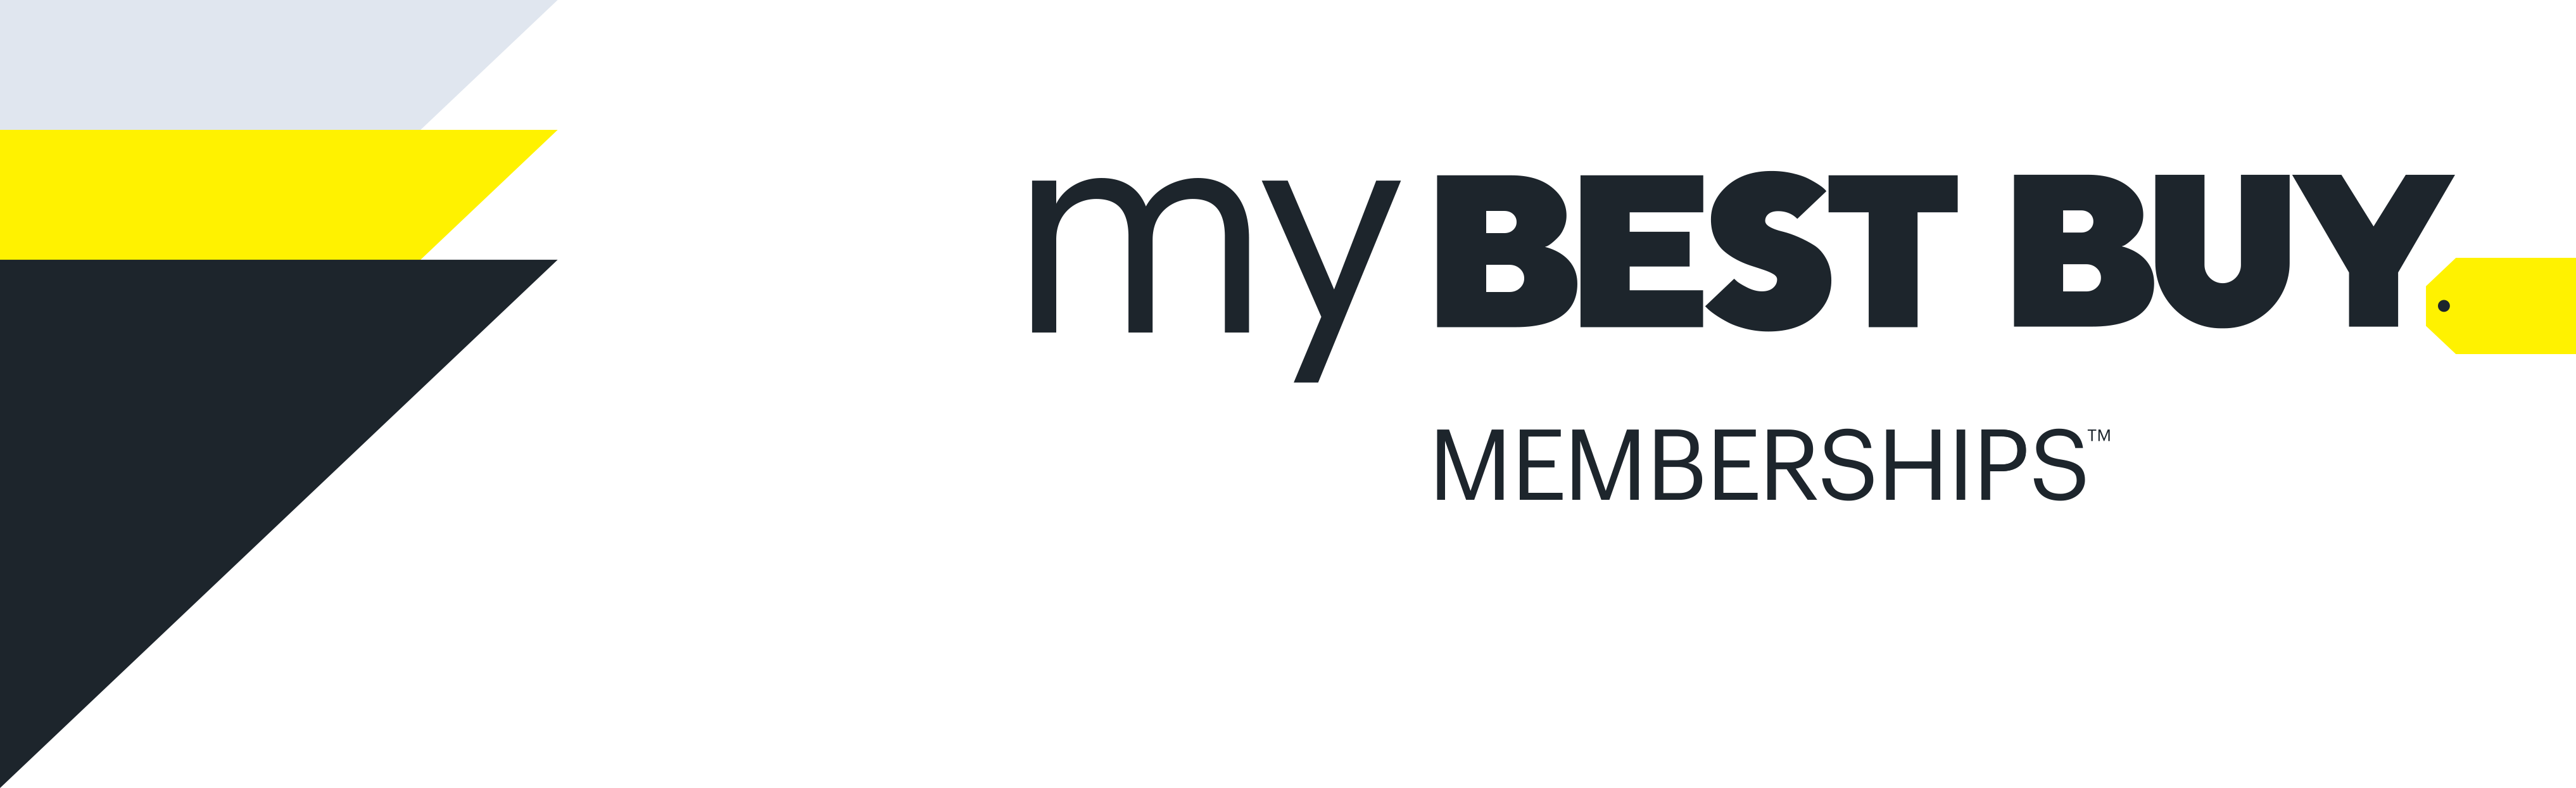 My Best Buy Memberships